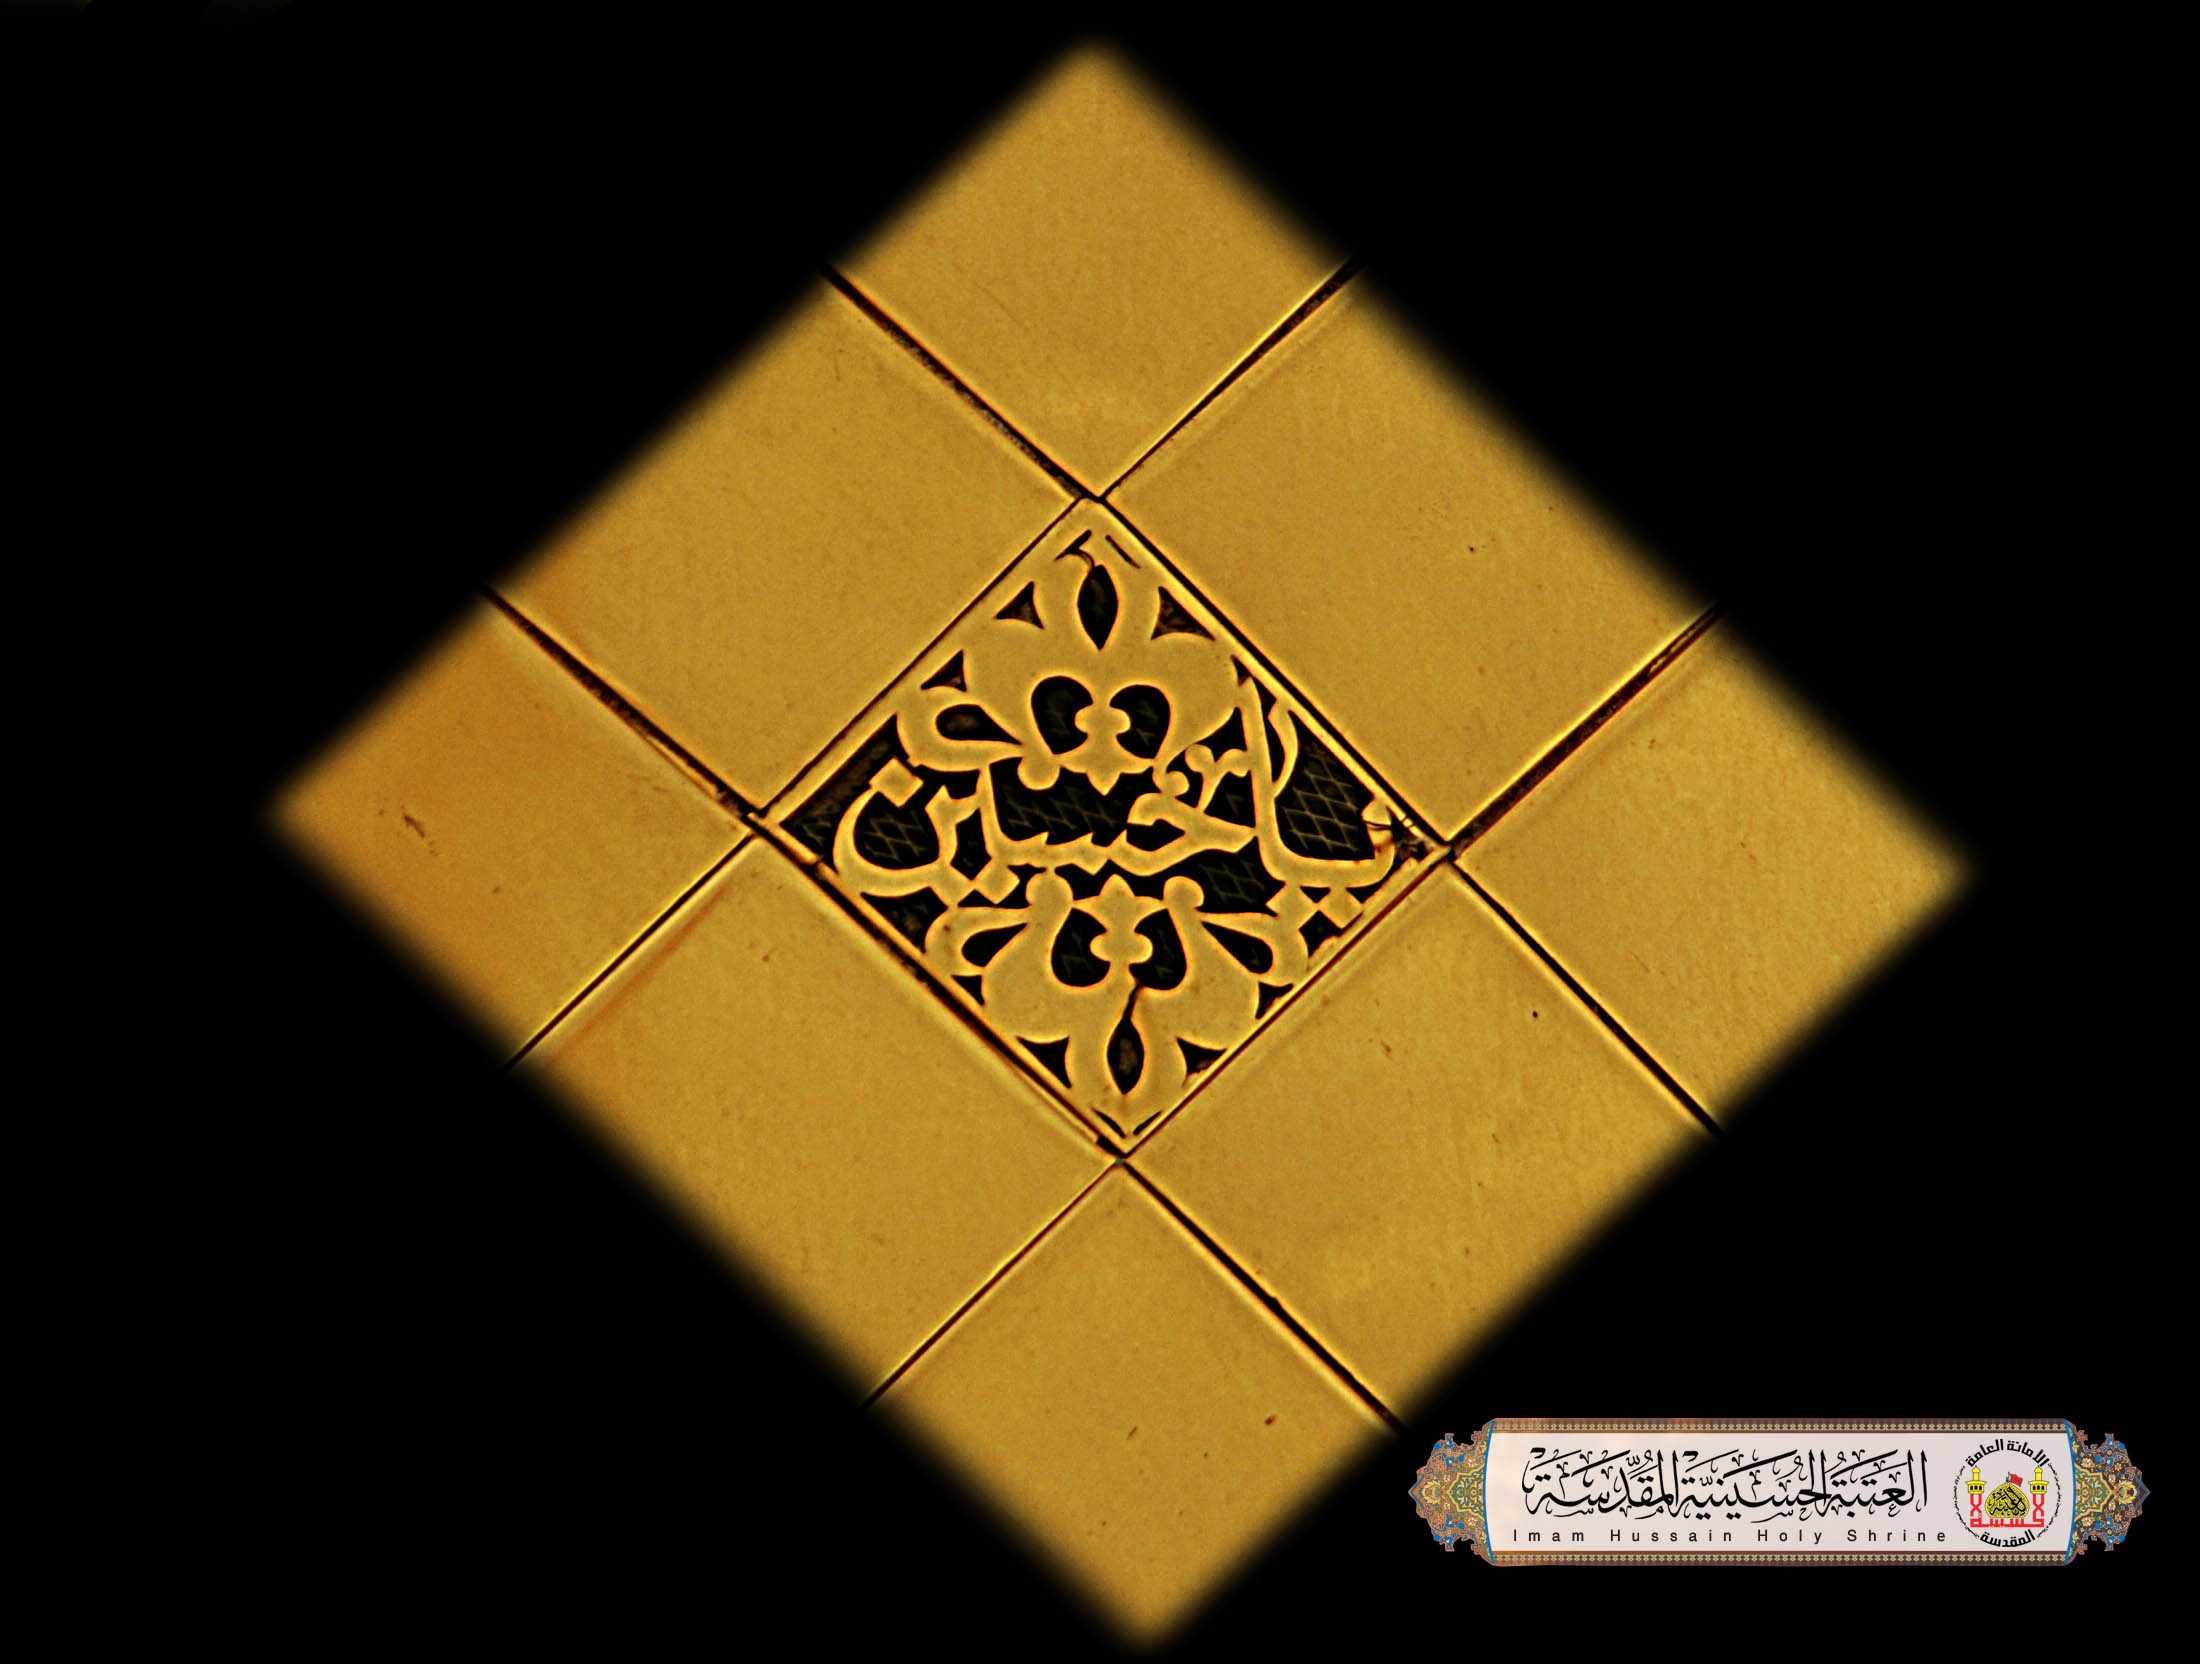 نمایی از کتیبه حکاکی شده با نام حضرت سید الشهداء